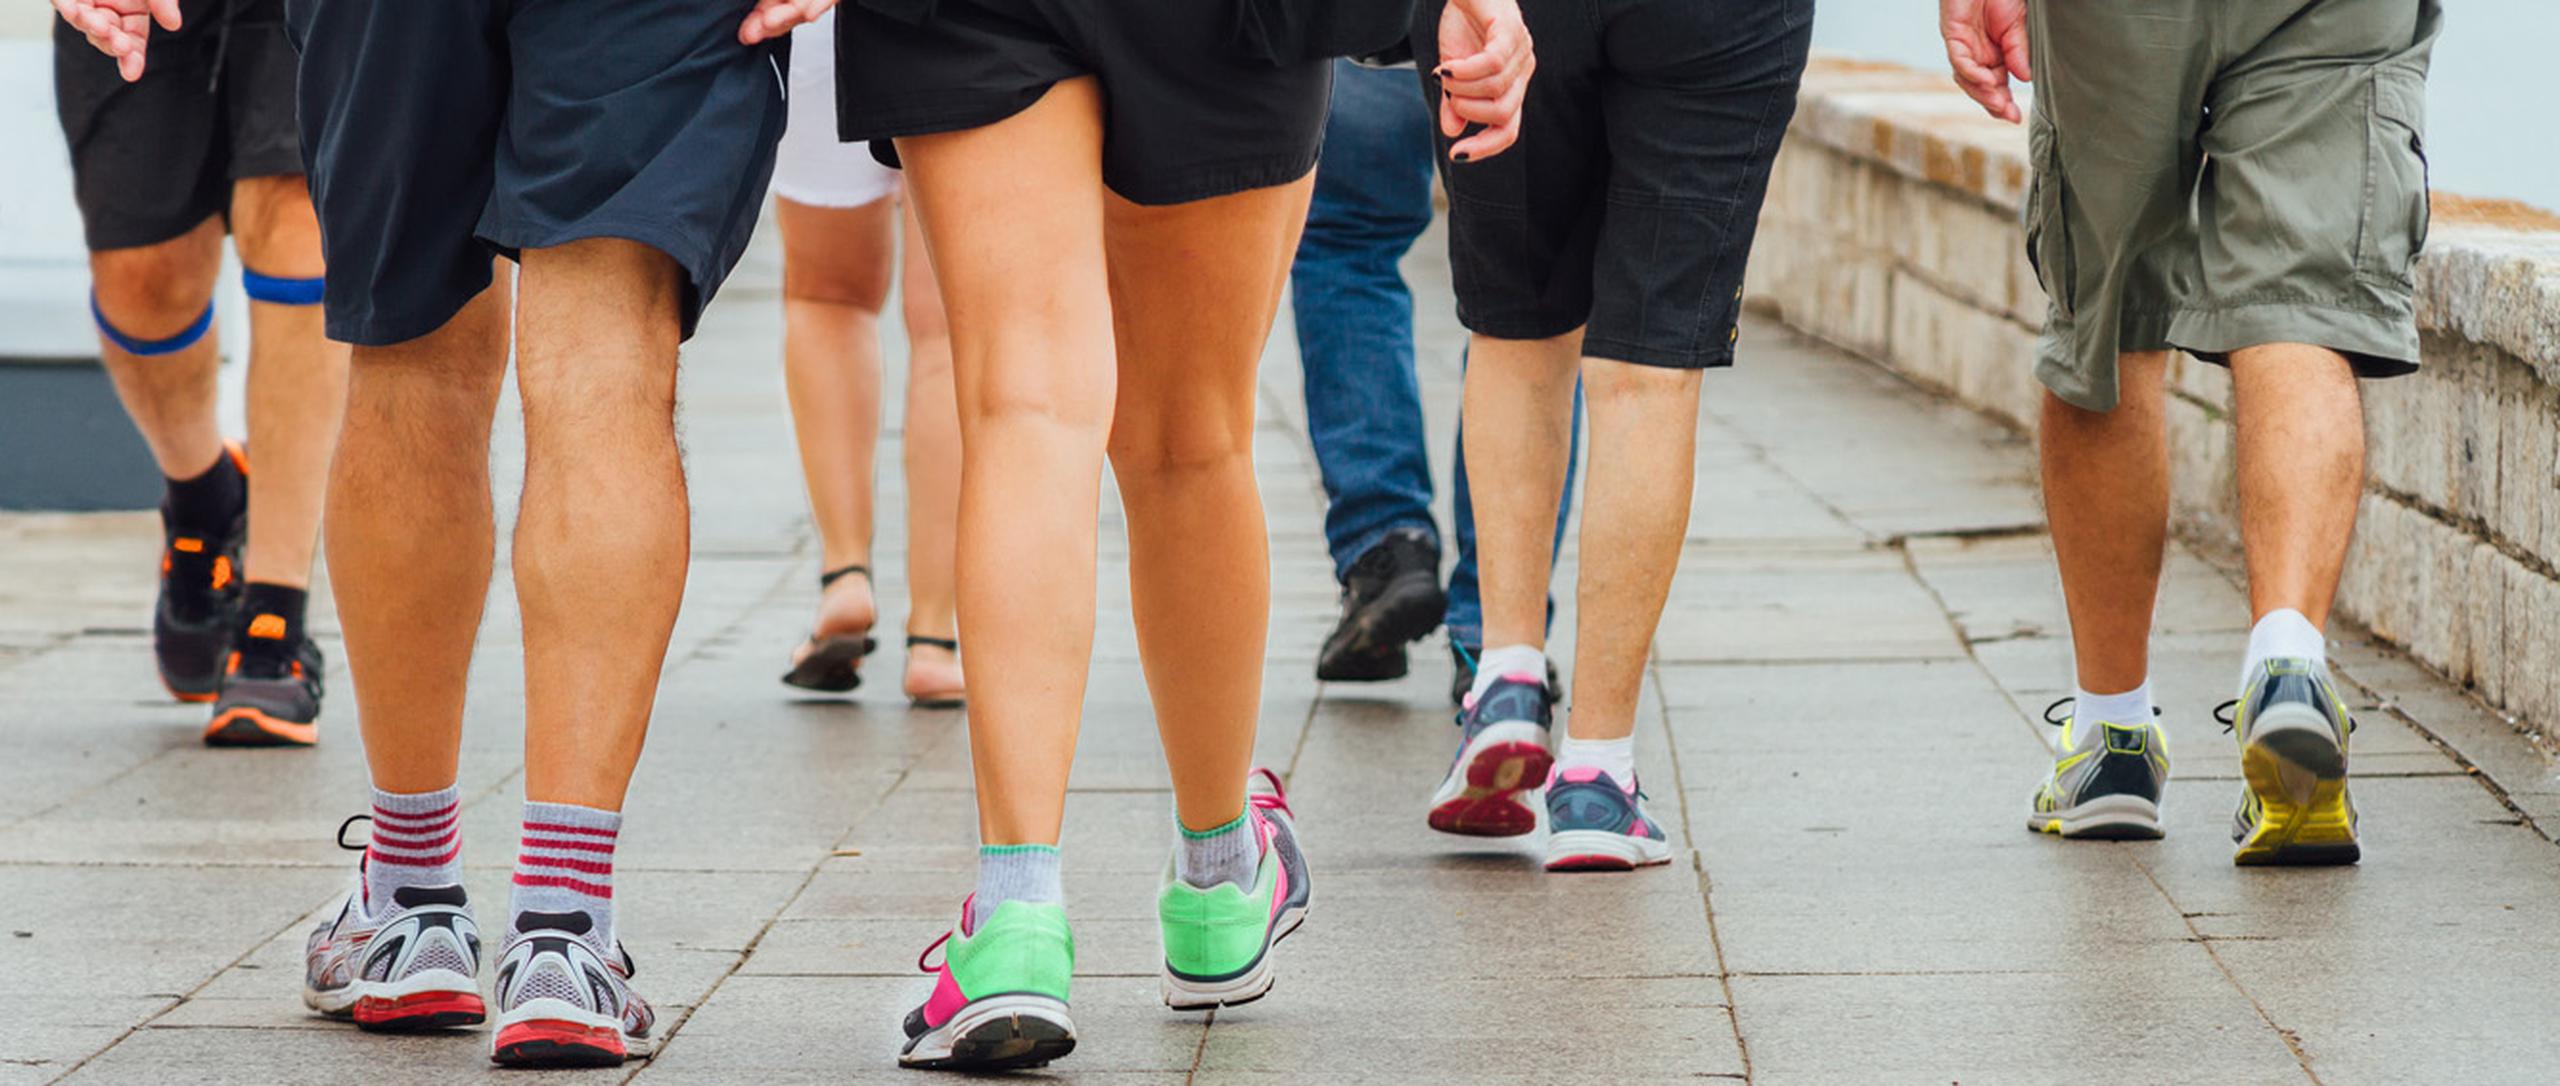 Caminar es una actividad sencilla, gratuita y no requiere ningún tipo de entrenamiento. (Shutterstock)